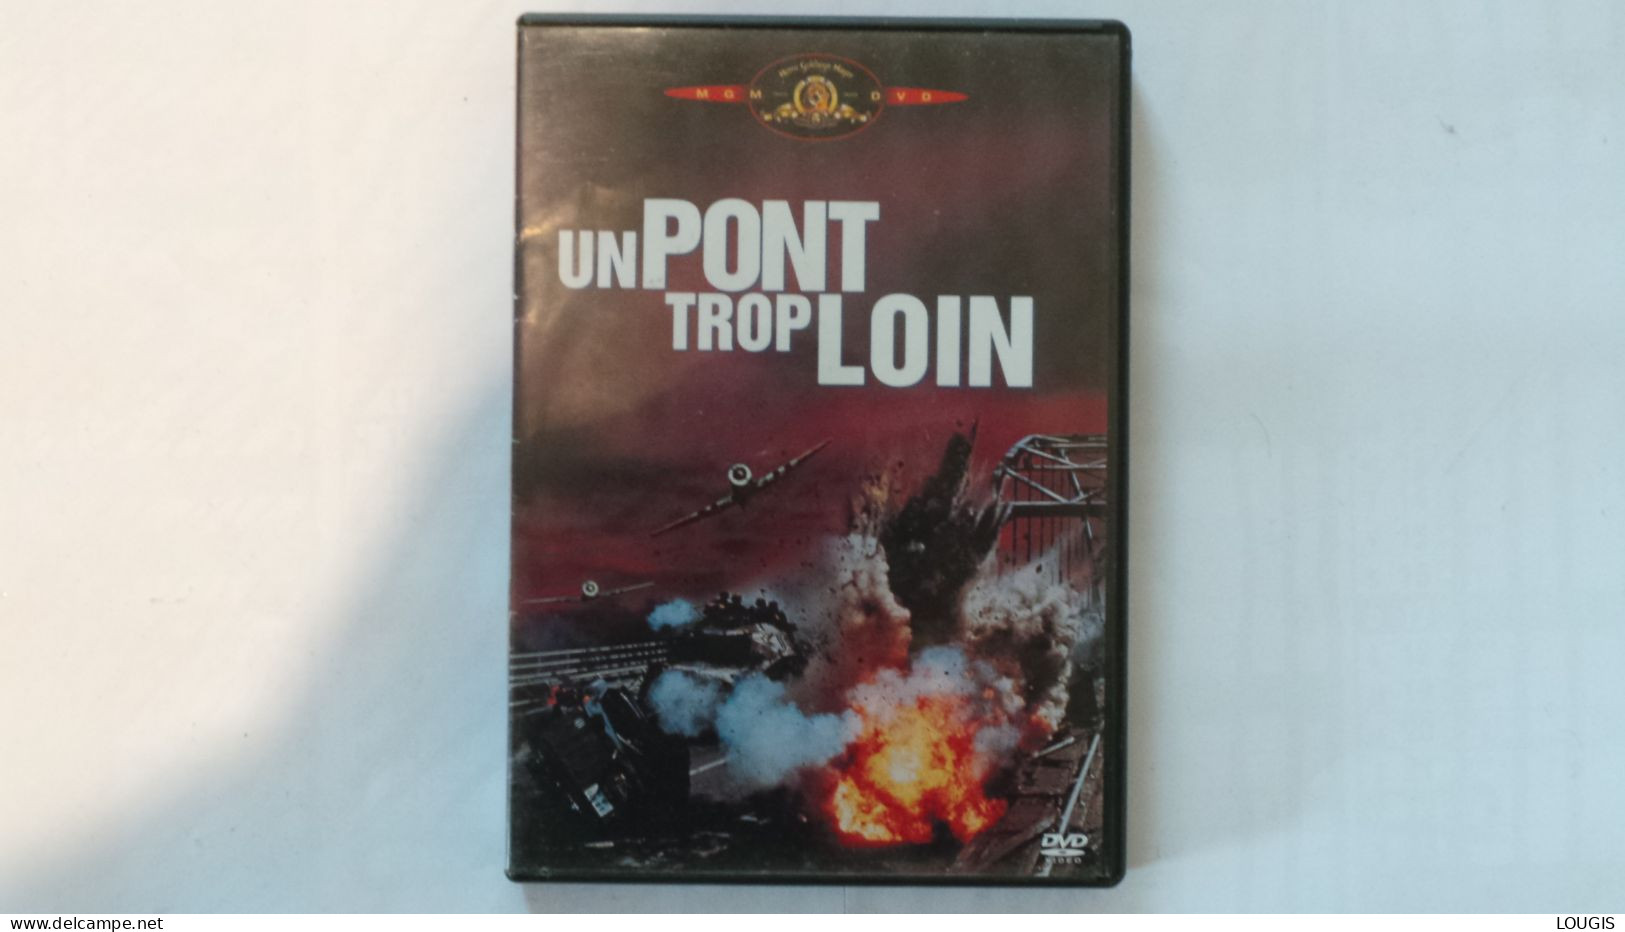 UN PONT TROP LOIN - Action, Adventure